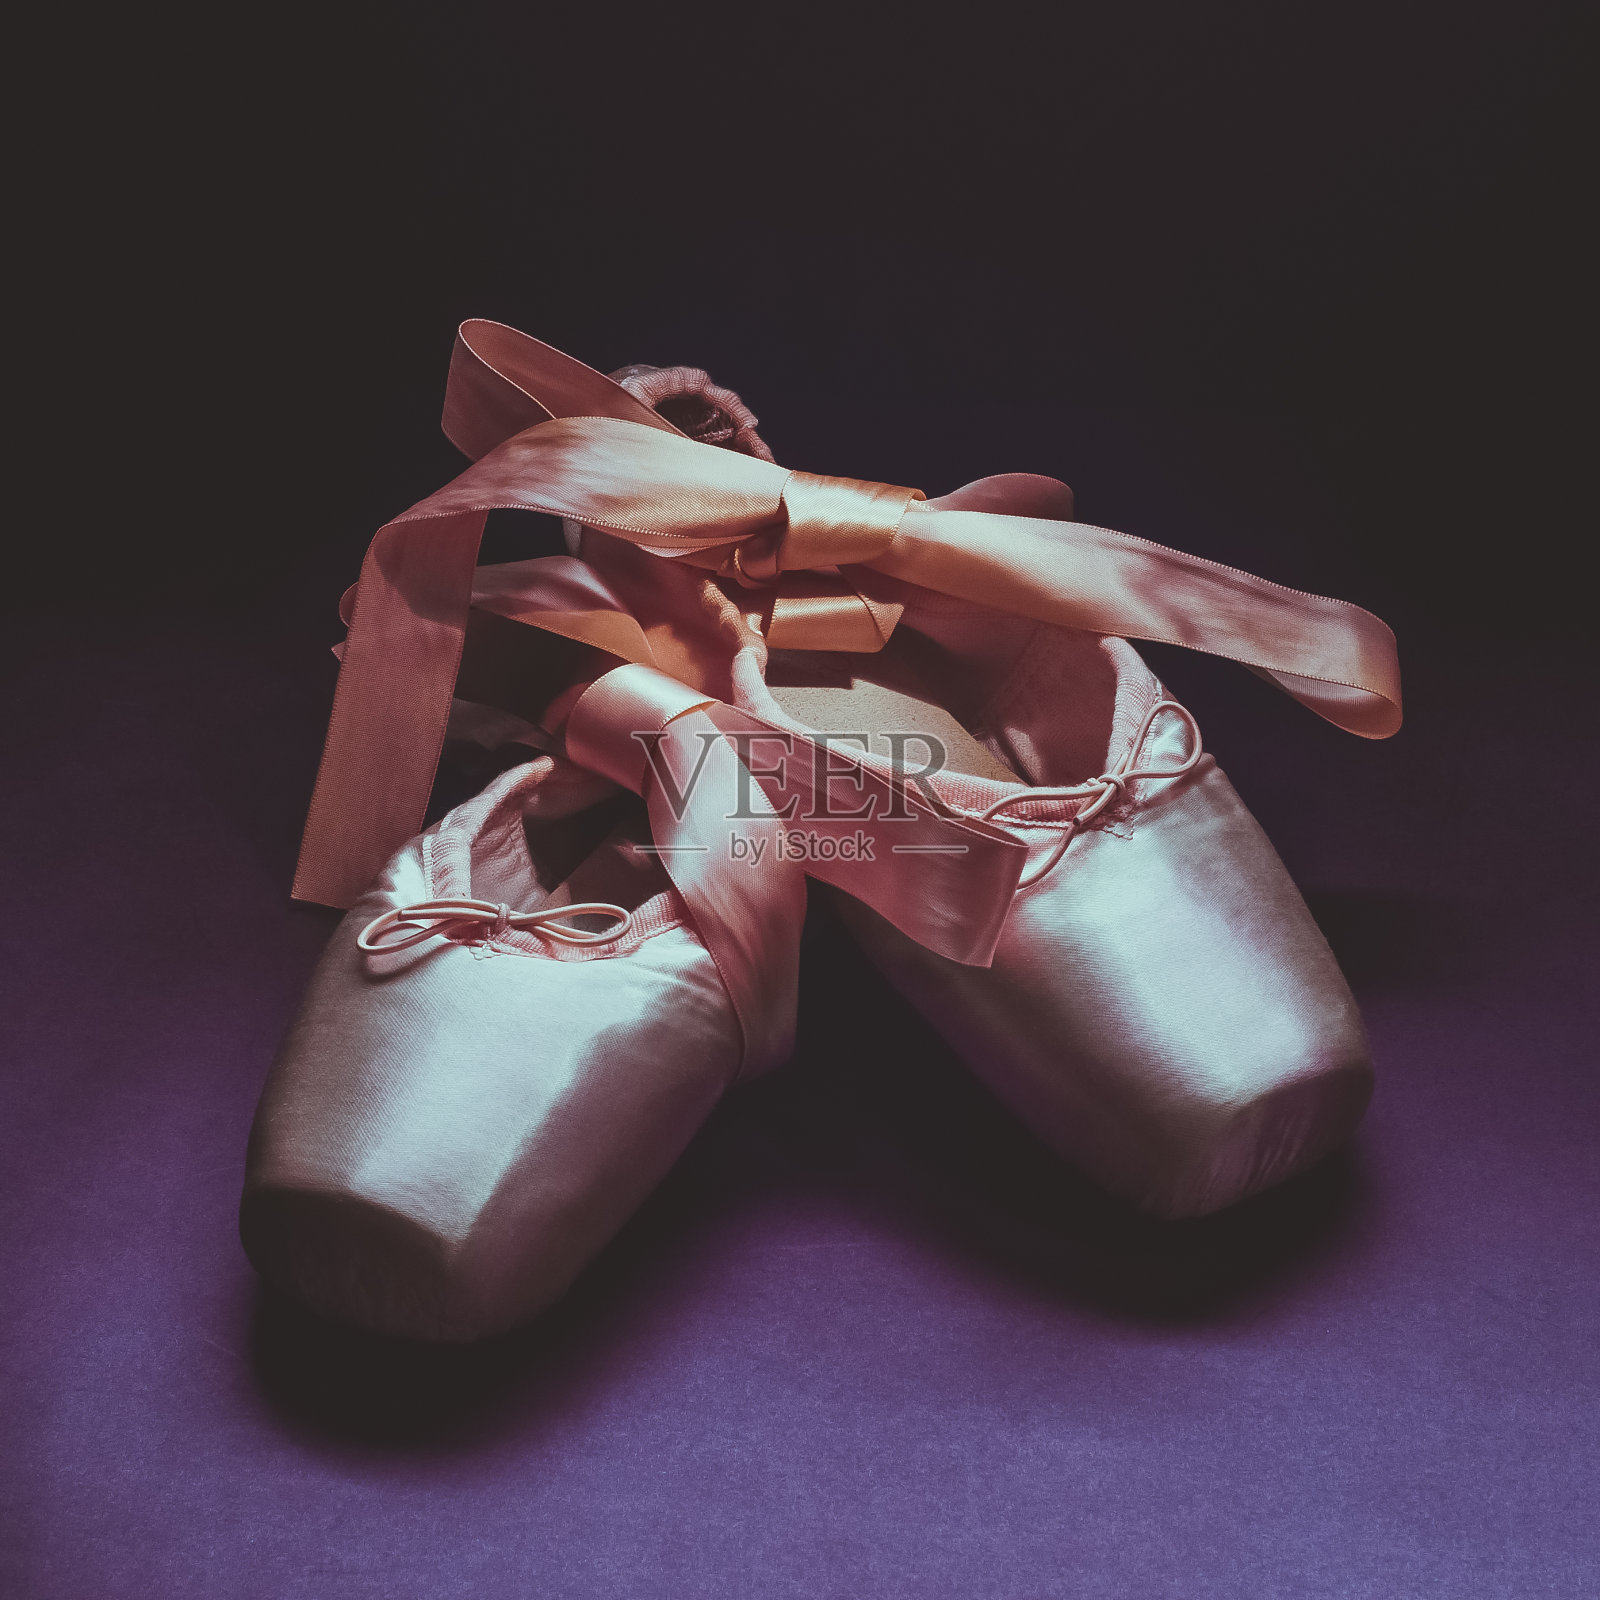 尖头鞋芭蕾舞舞鞋与蝴蝶结的丝带漂亮地折叠在一个黑暗的背景。照片摄影图片